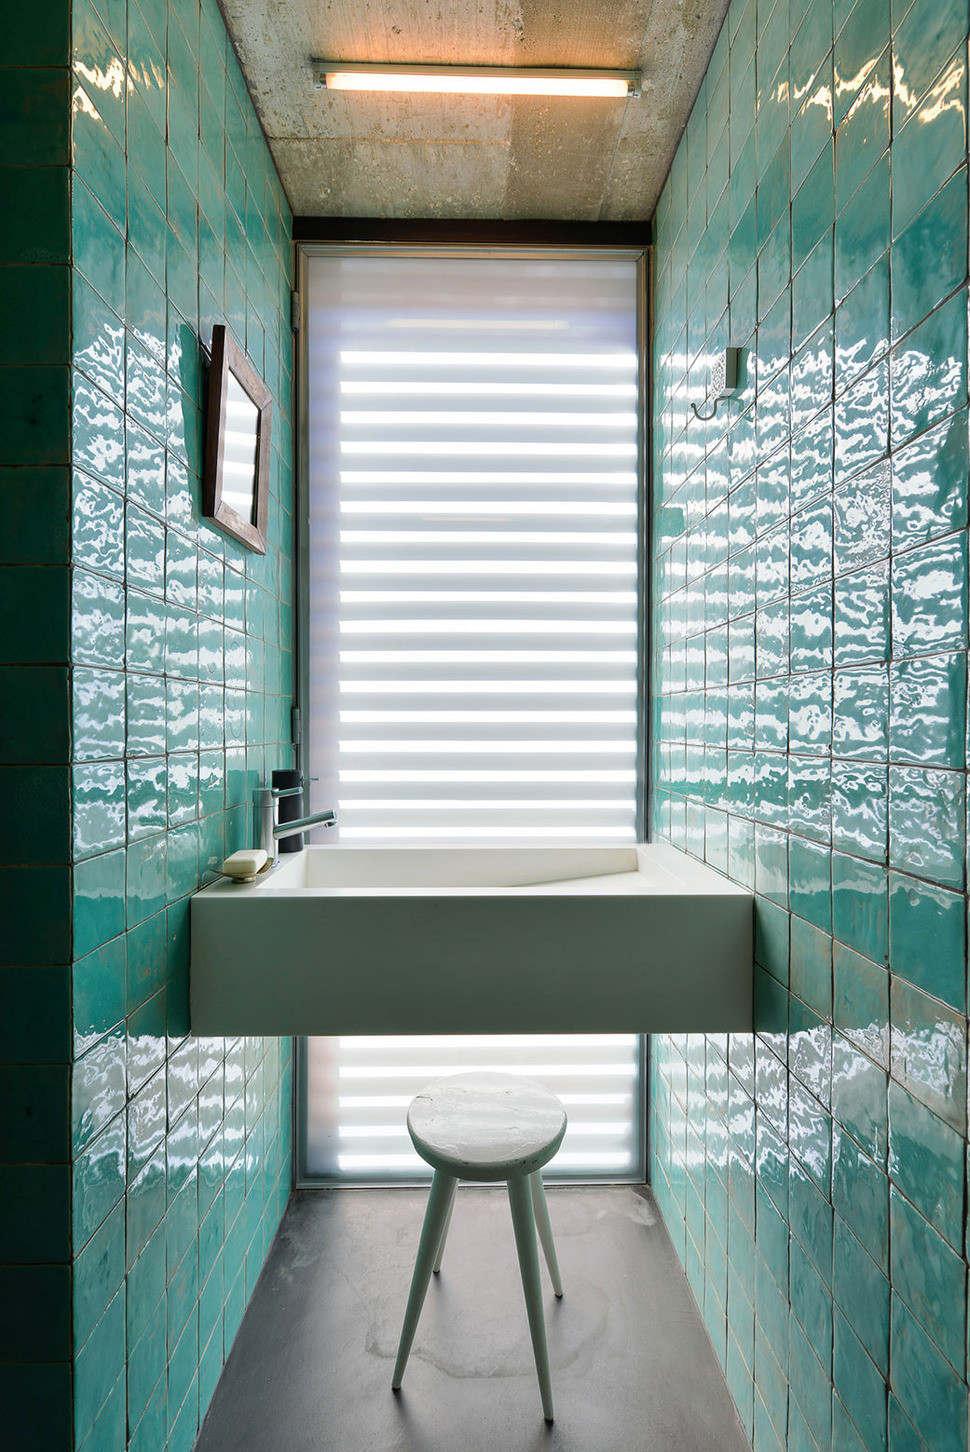 Bathroom Shower Tile Ideas
 Top 10 Tile Design Ideas for a Modern Bathroom for 2015